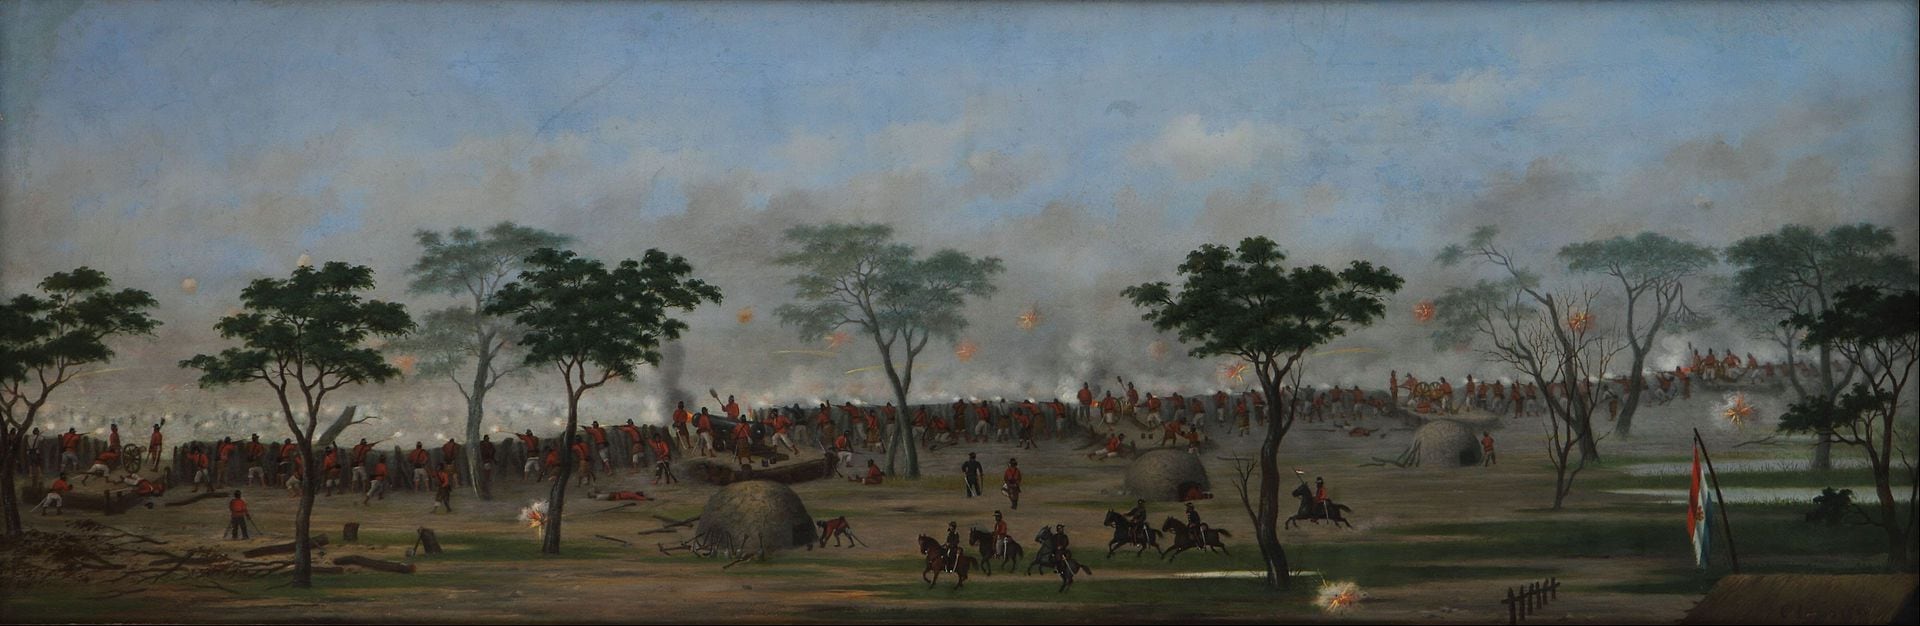 Este cuadro López lo tituló "Trinchera de Curupaytí". En esa batalla, librada el 23 de septiembre de 1866, sería herido gravemente. Museo Nacional de Bellas Artes.